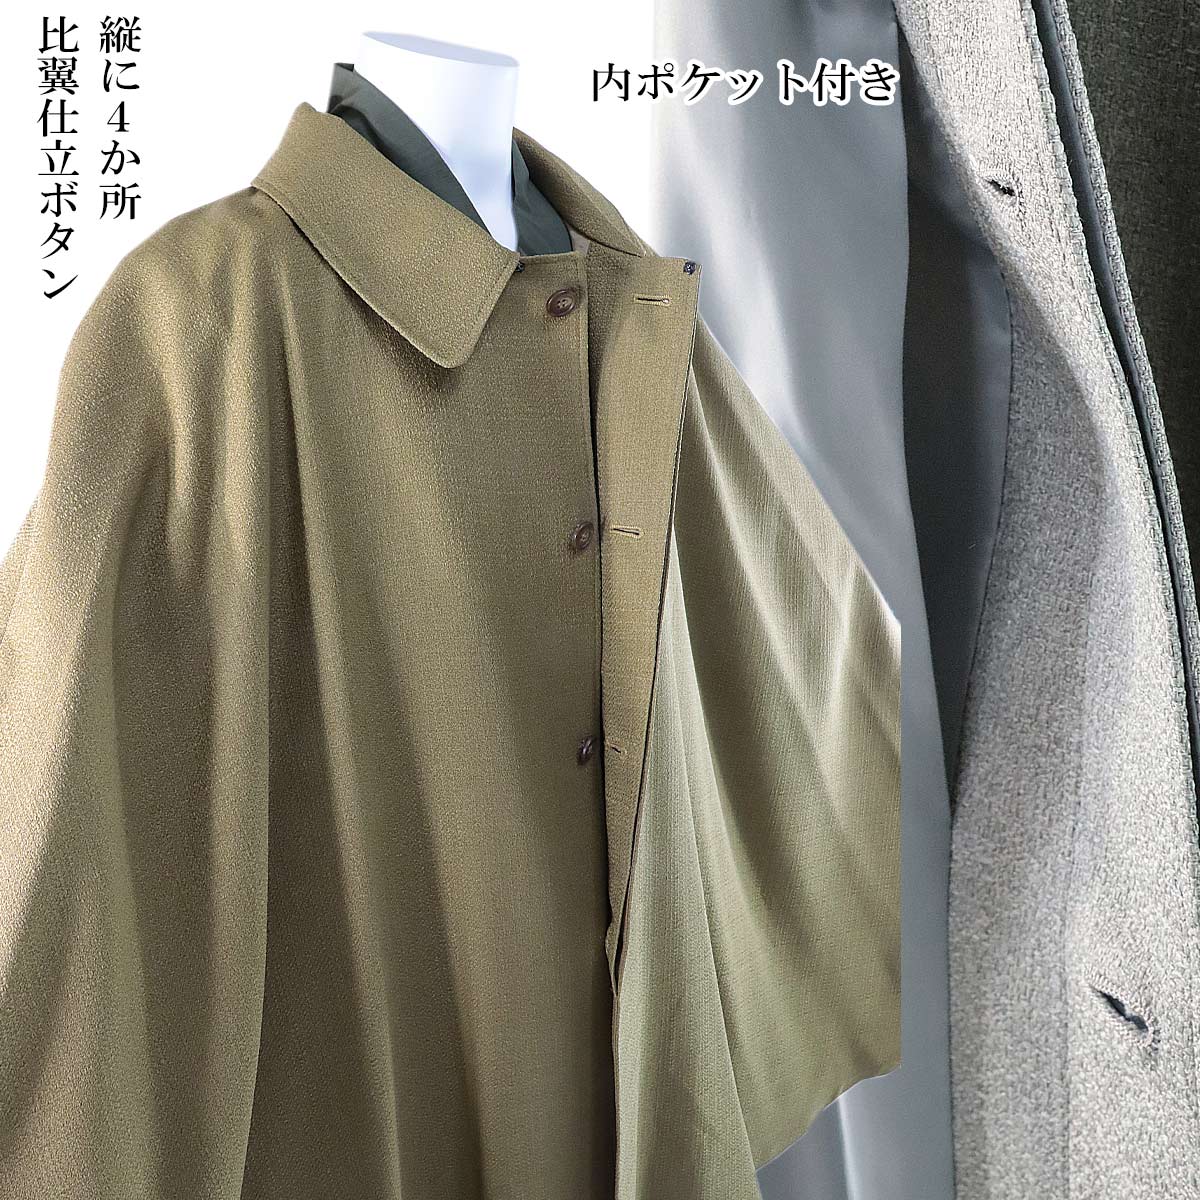  манто пальто мужской японский костюм пальто полиэстер 100% серый / золотисто-коричневый M/L-size